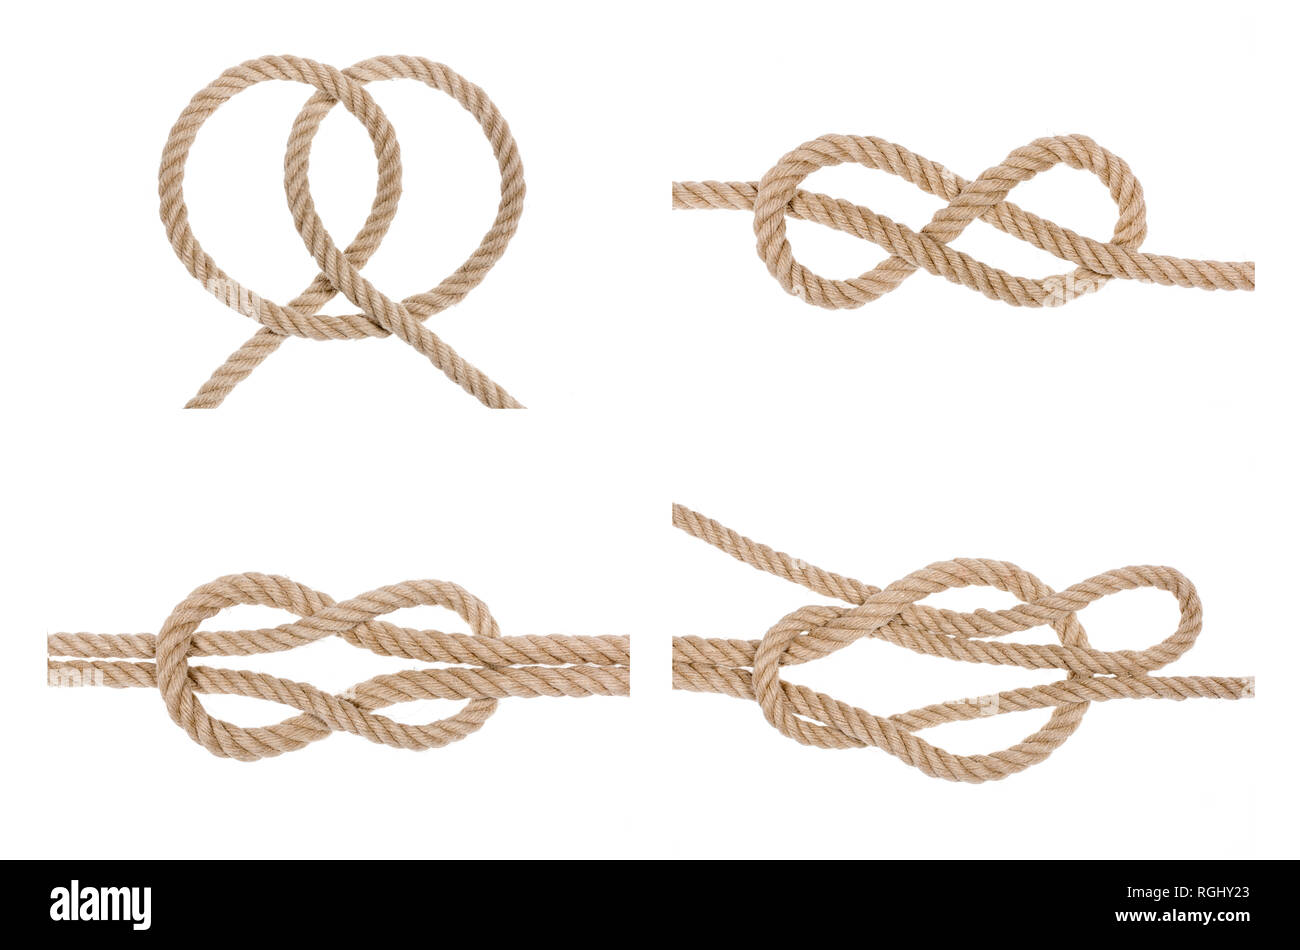 Set of hemp rope knot isolated on white background. Nautical rope knot set. Stock Photo